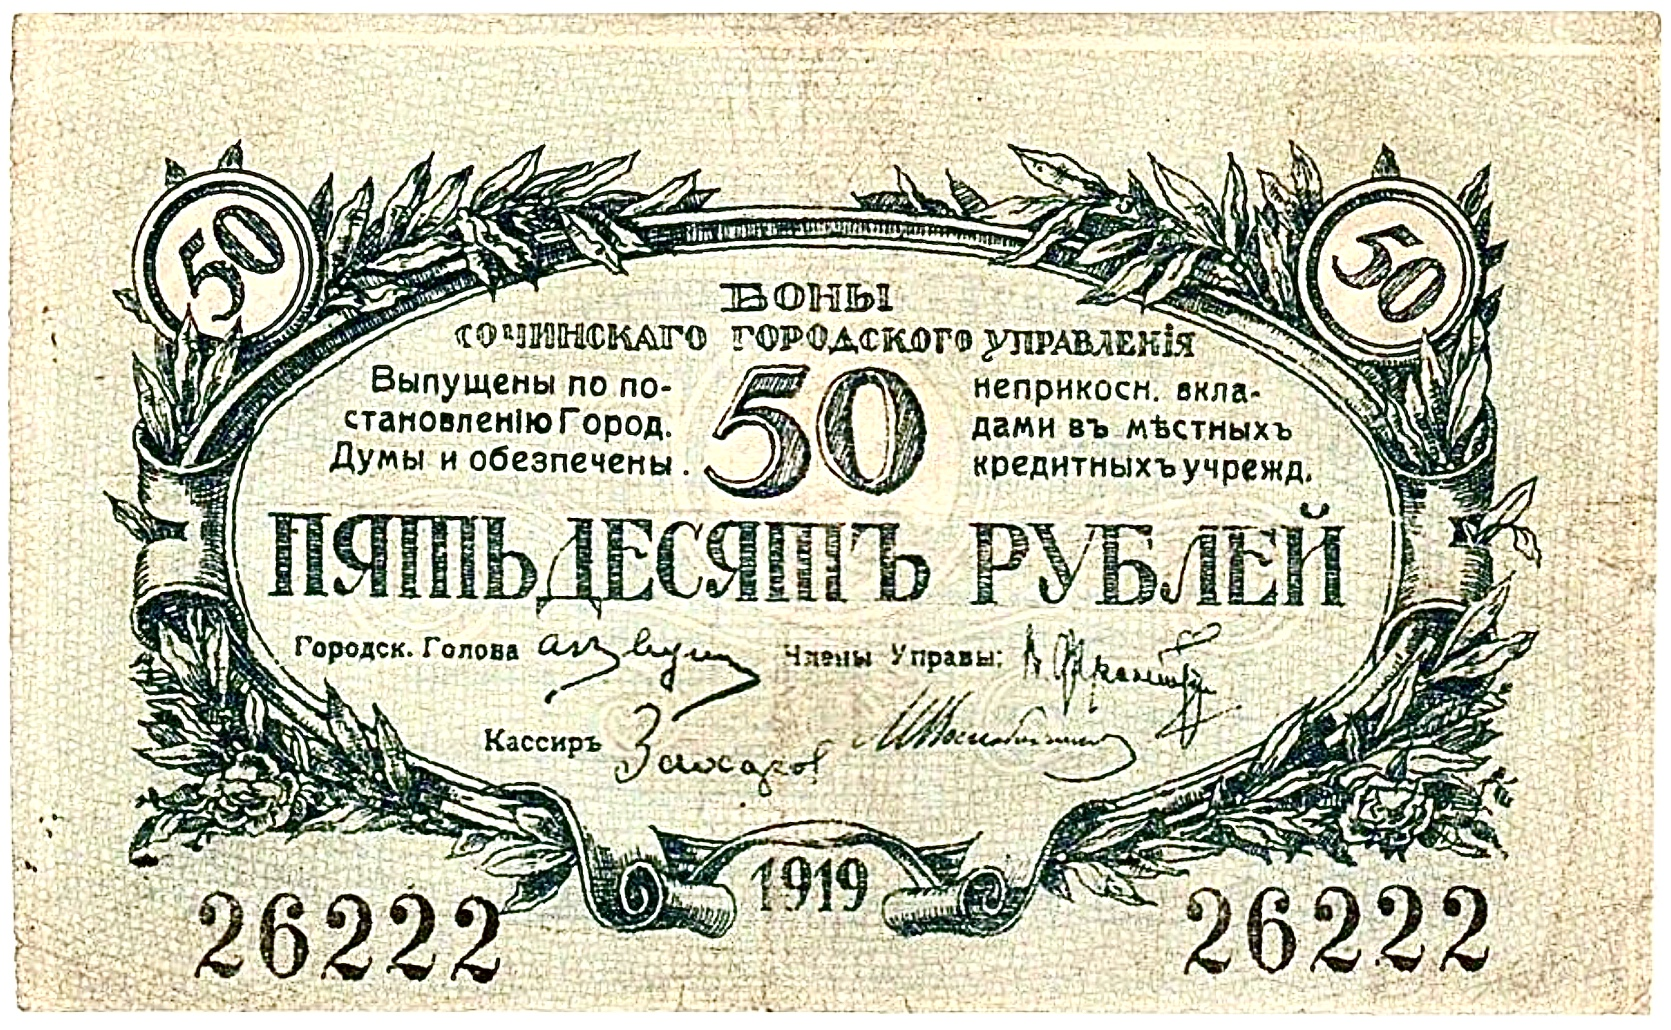 50 рублей 1919 г., Сочи | Hobby Keeper Articles